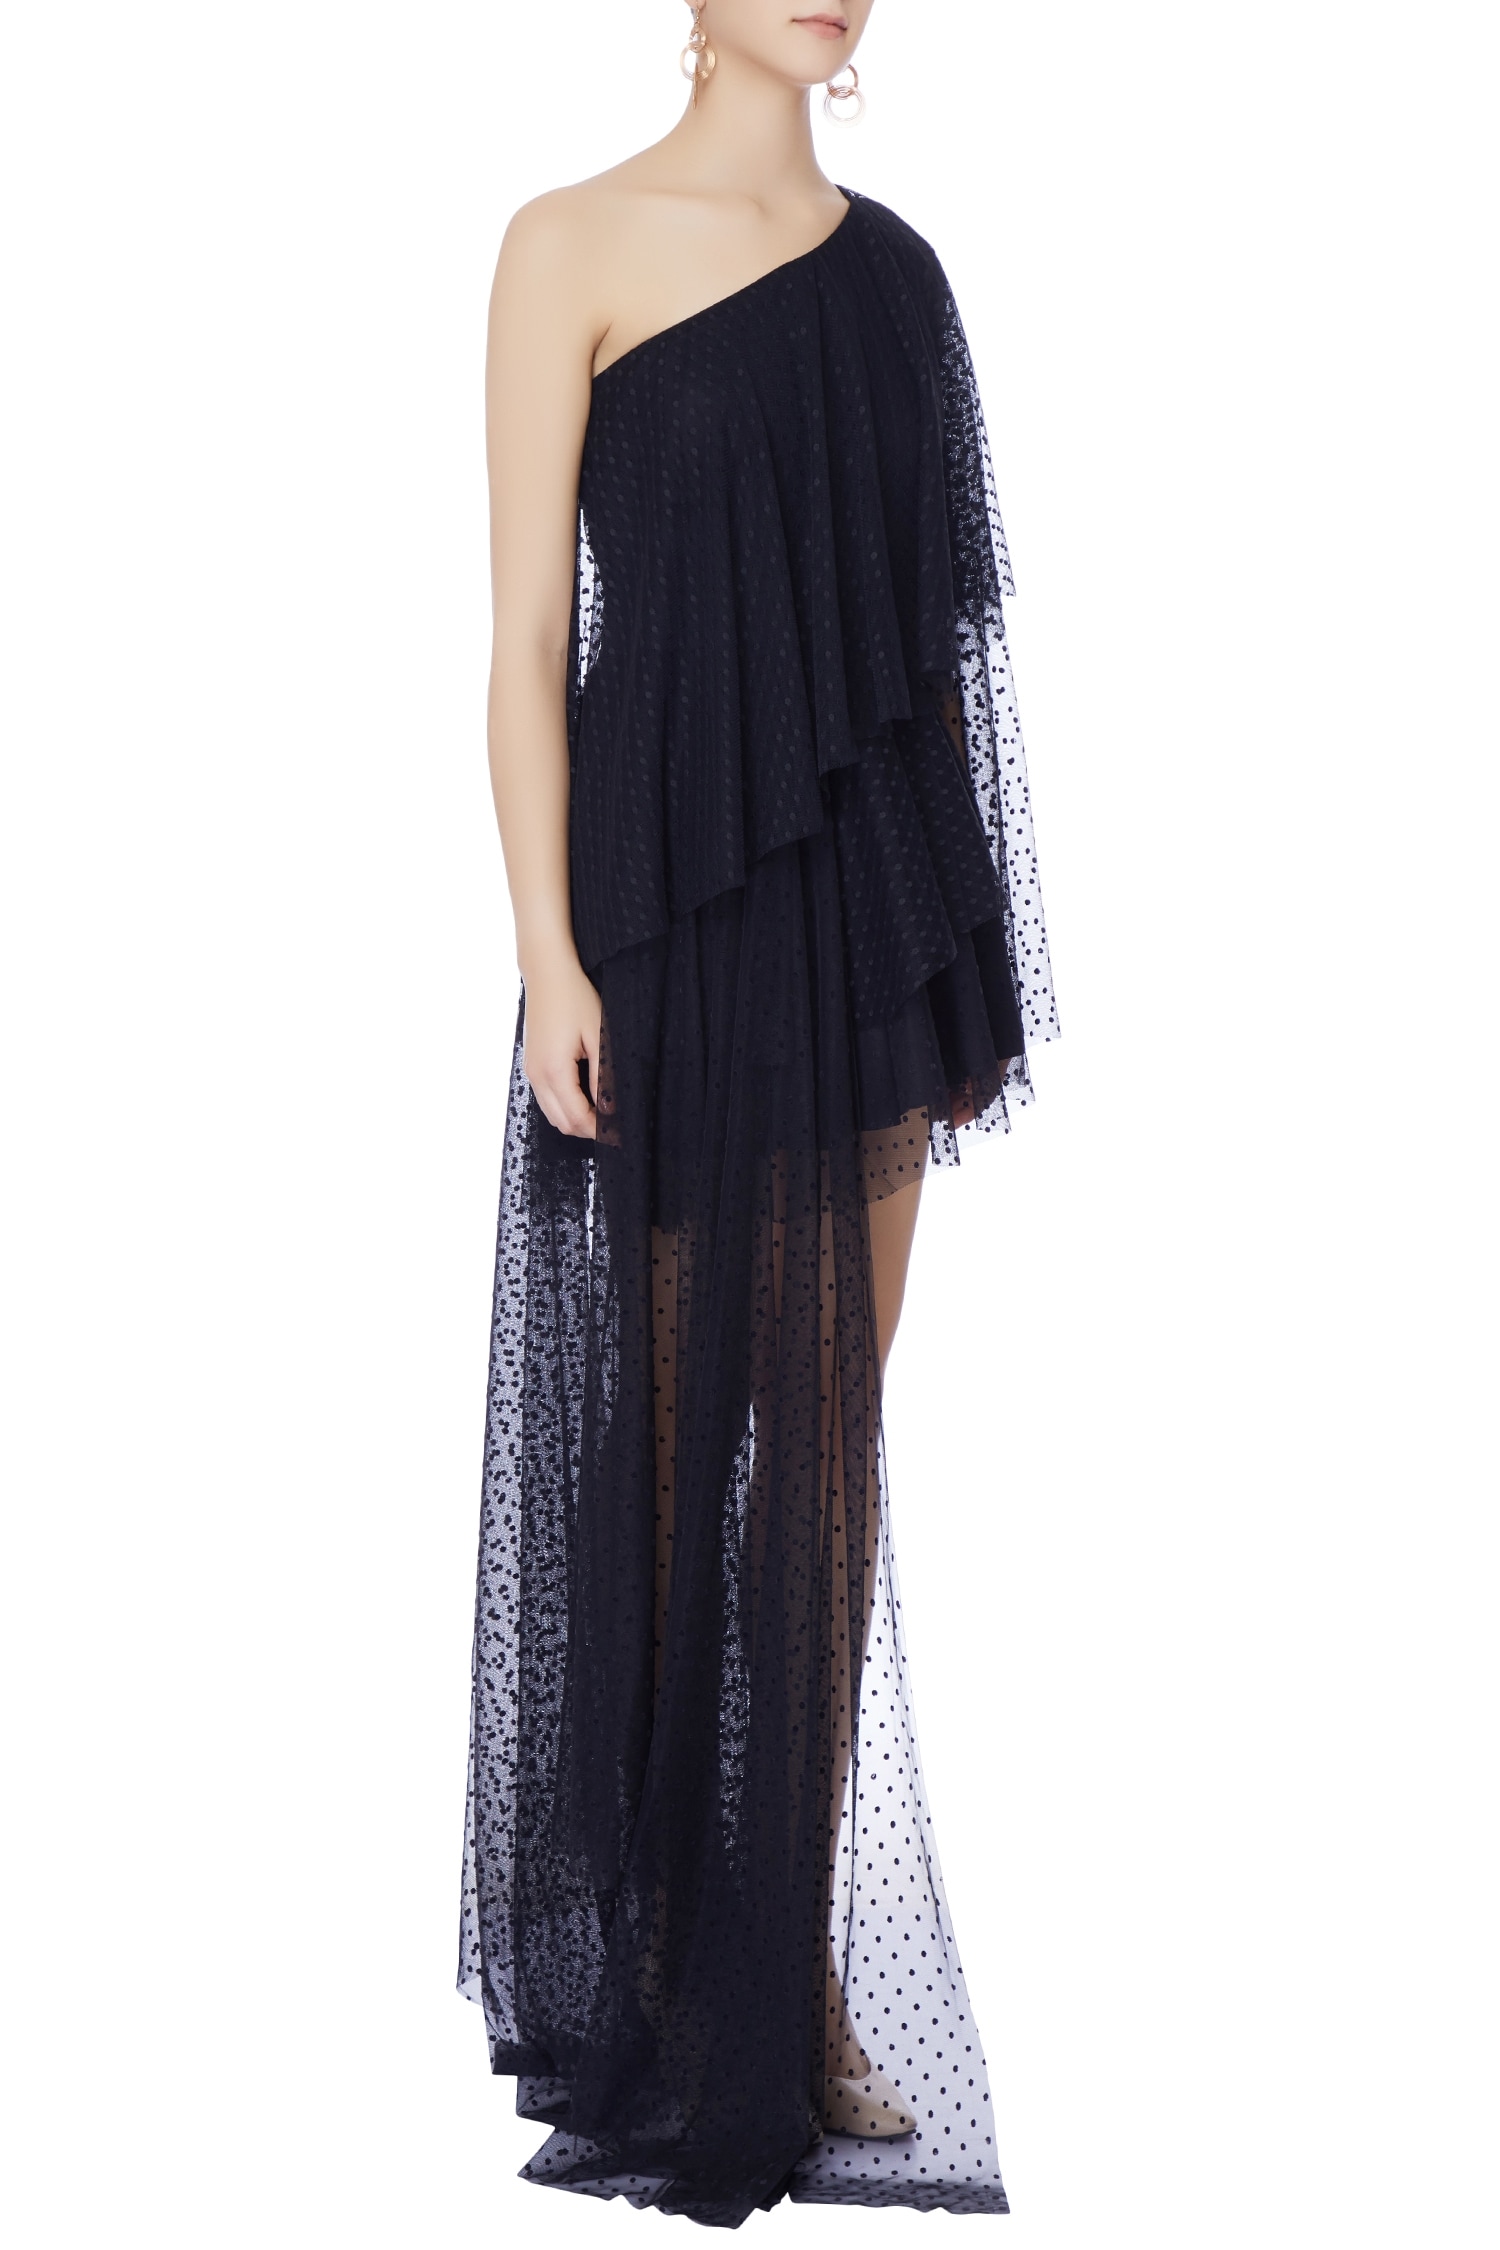 Buy Deme by Gabriella Black One Shoulder Dress Online | Aza Fashions